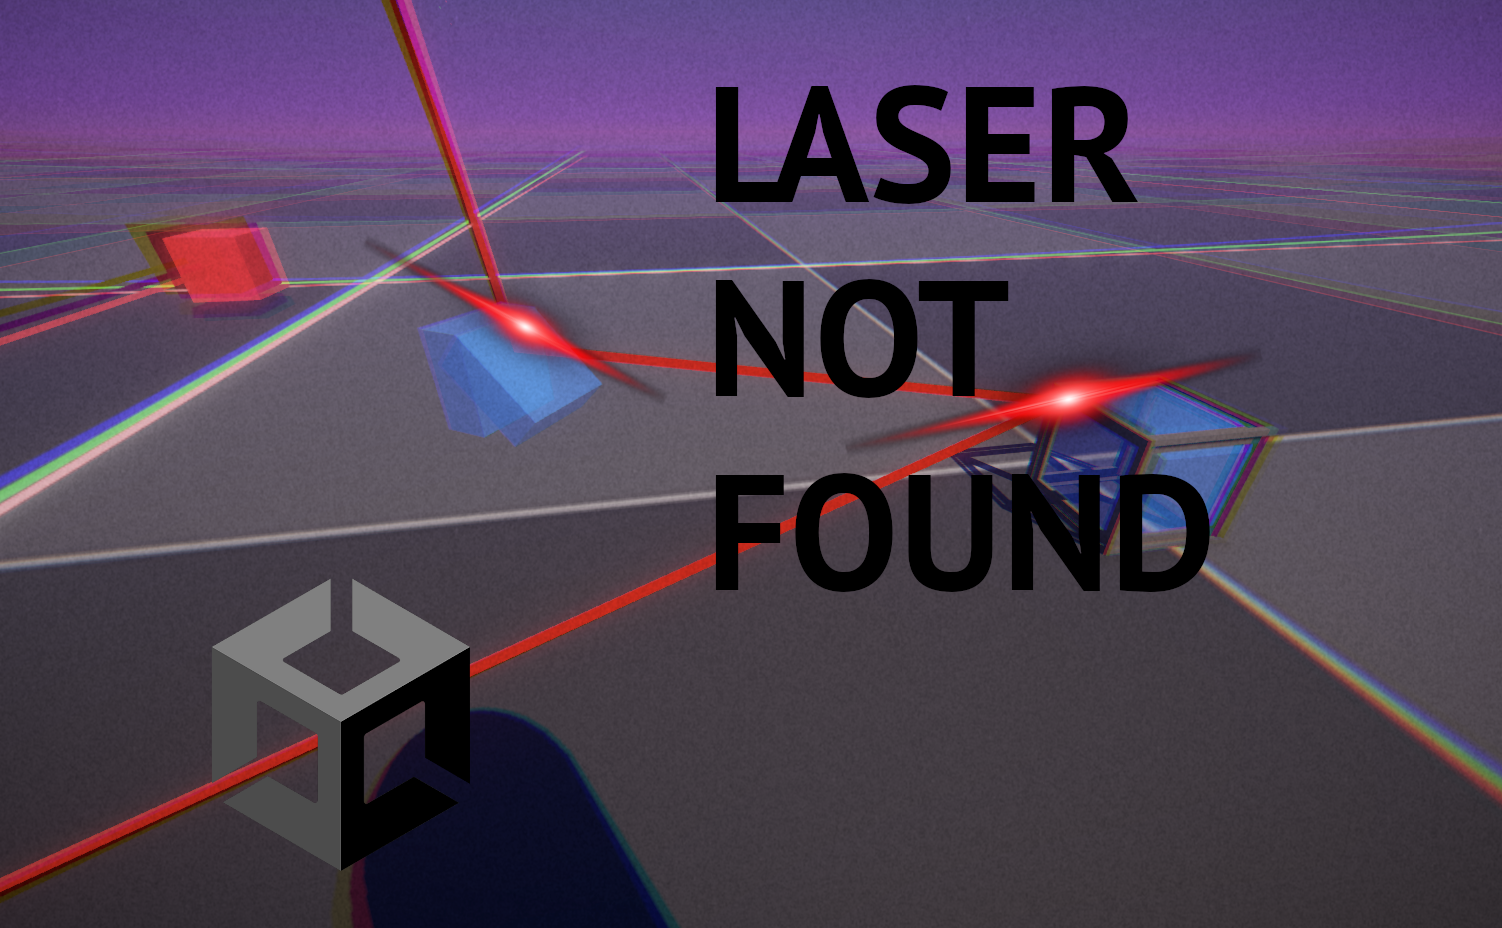 Laser not found